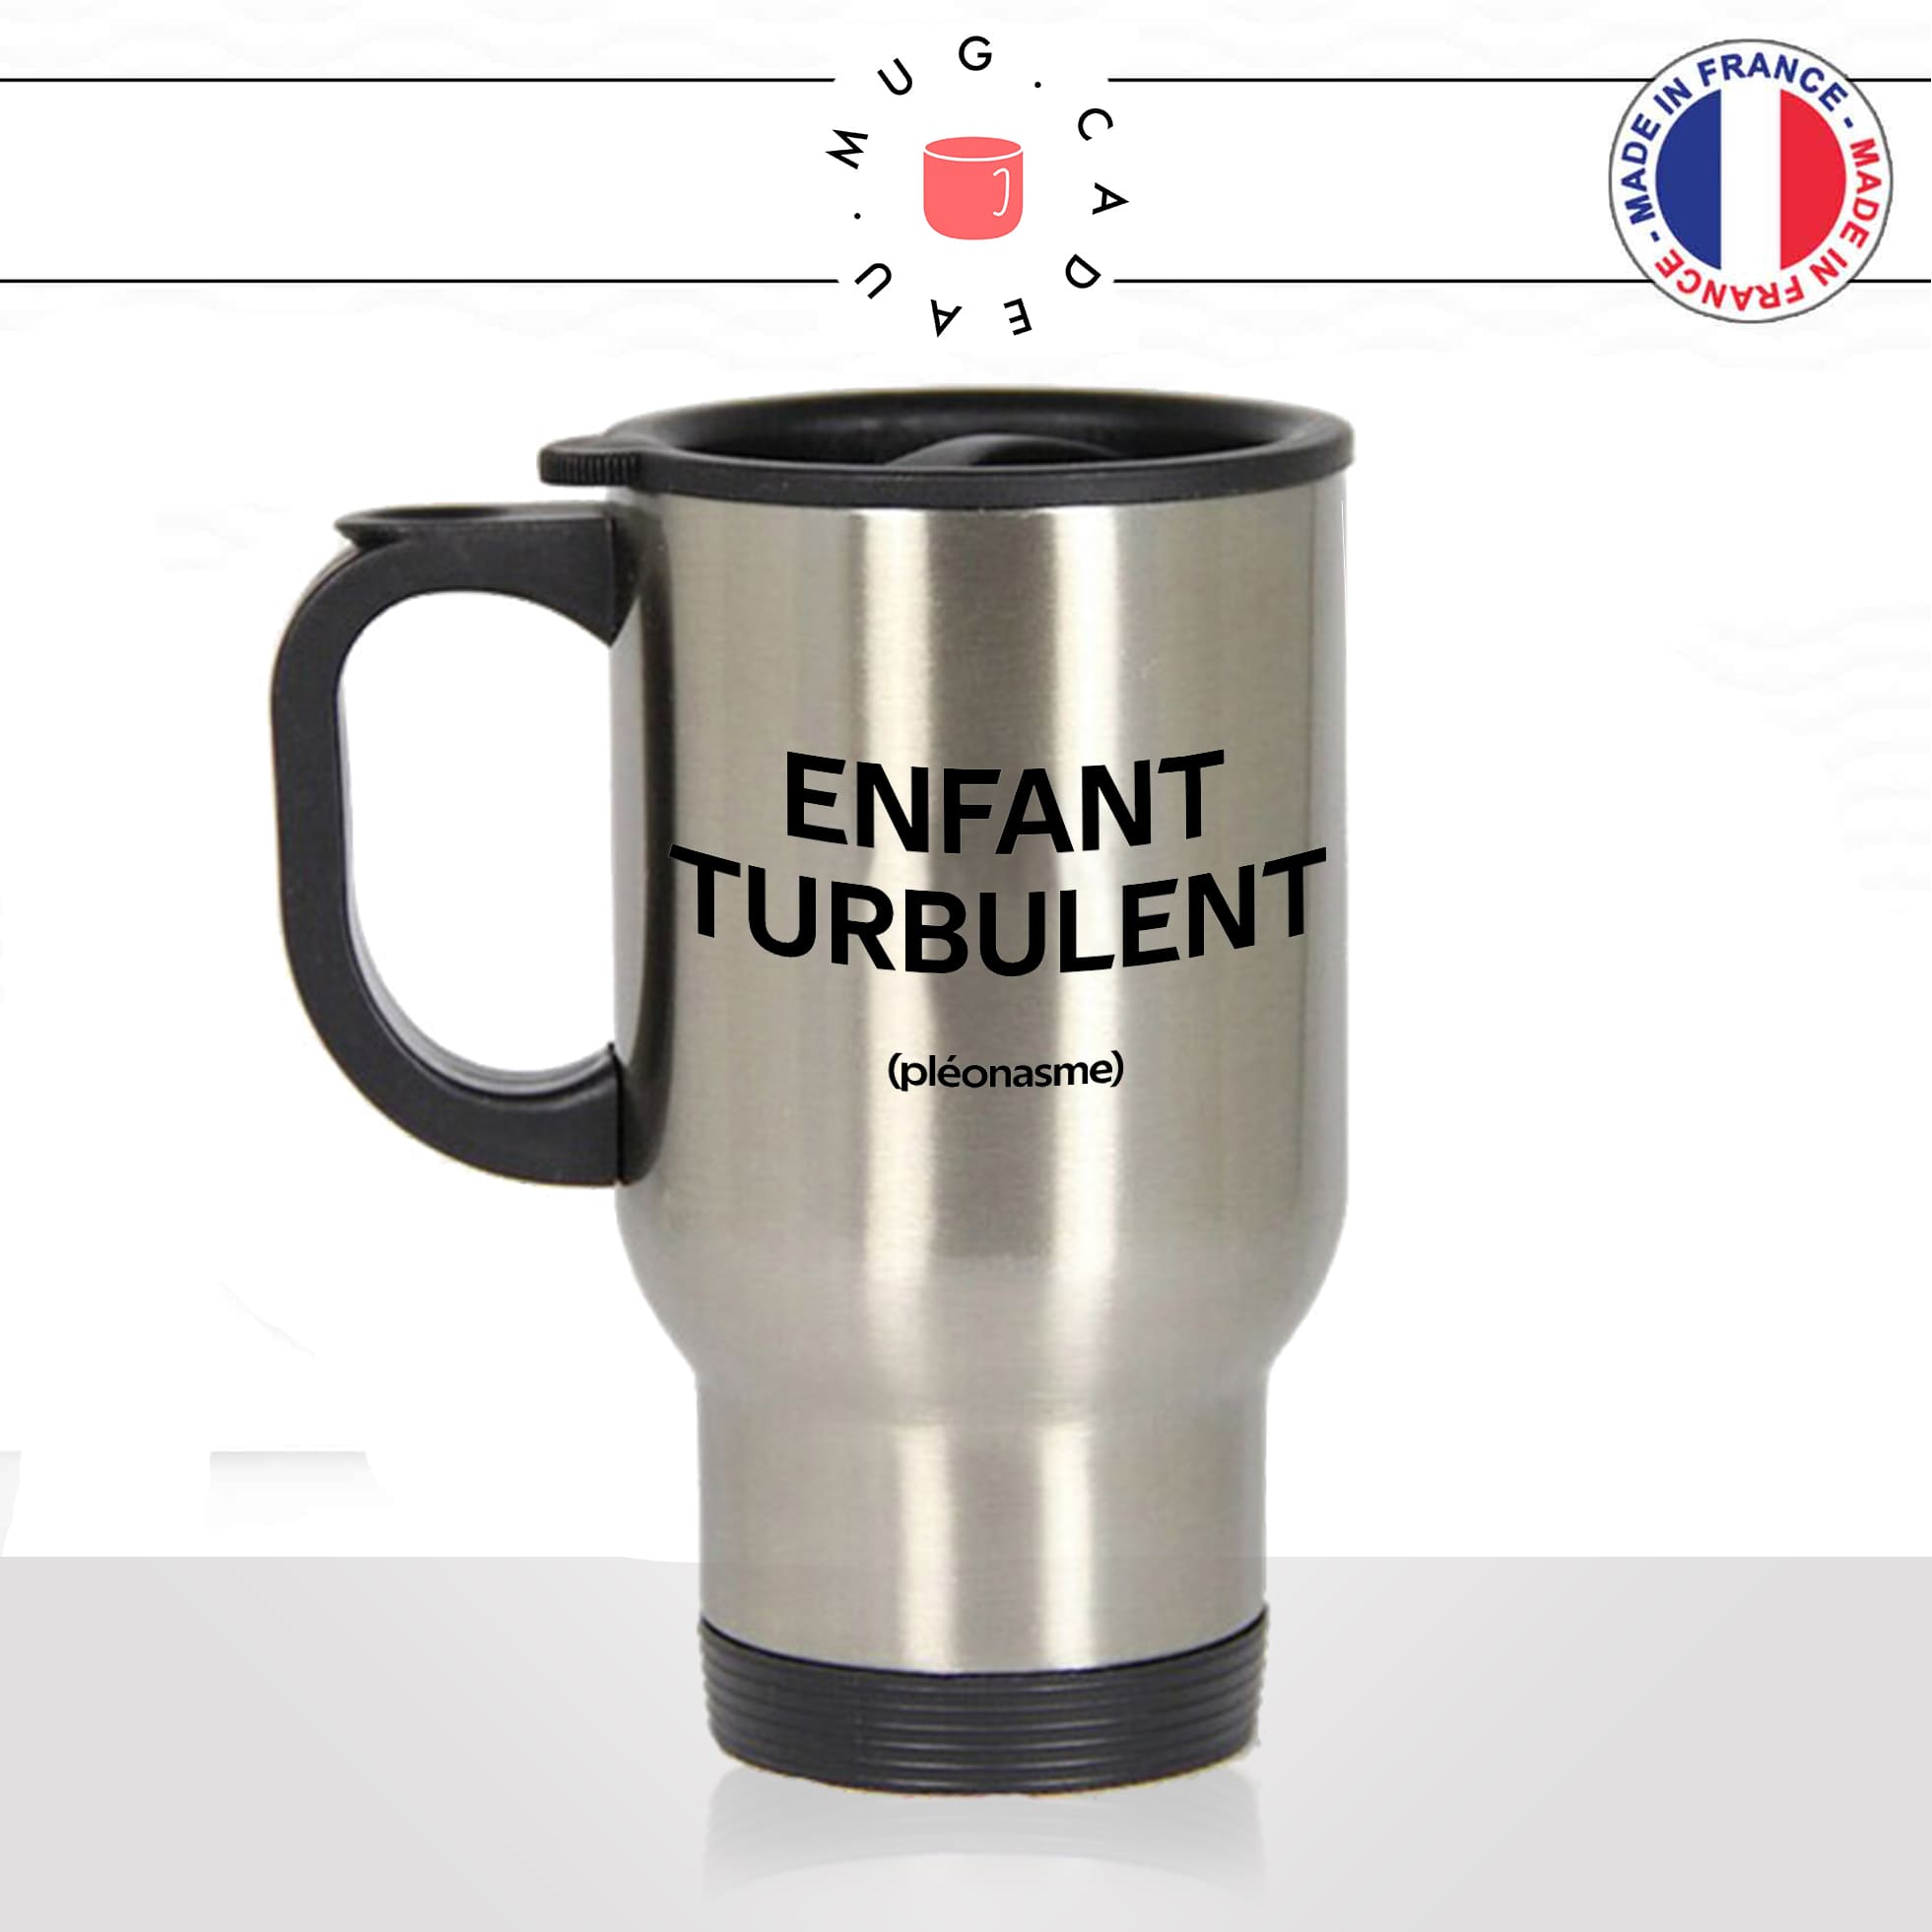 mug-tasse-thermos-isotherme-voyage-enfant-turbulent-pleonasme-figure-de-style-gosse-parents-humour-fun-idée-cadeau-originale-cool